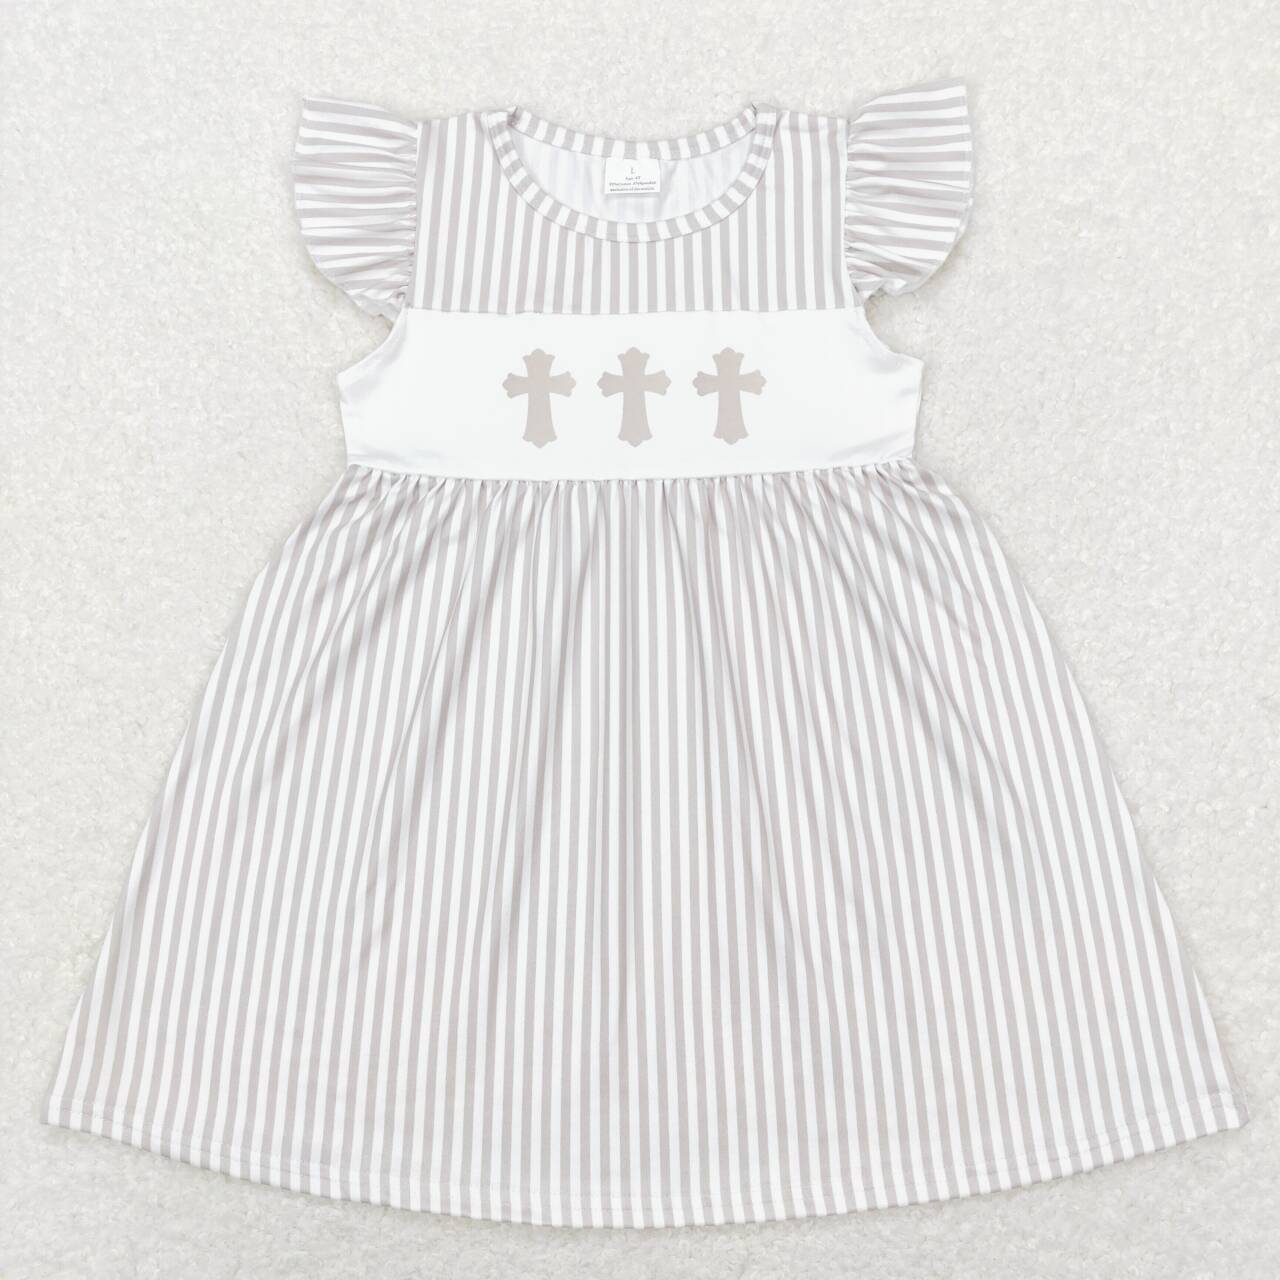 GSD0568 Cross Khaki Stripes Print Girls Knee Length Easter Dress